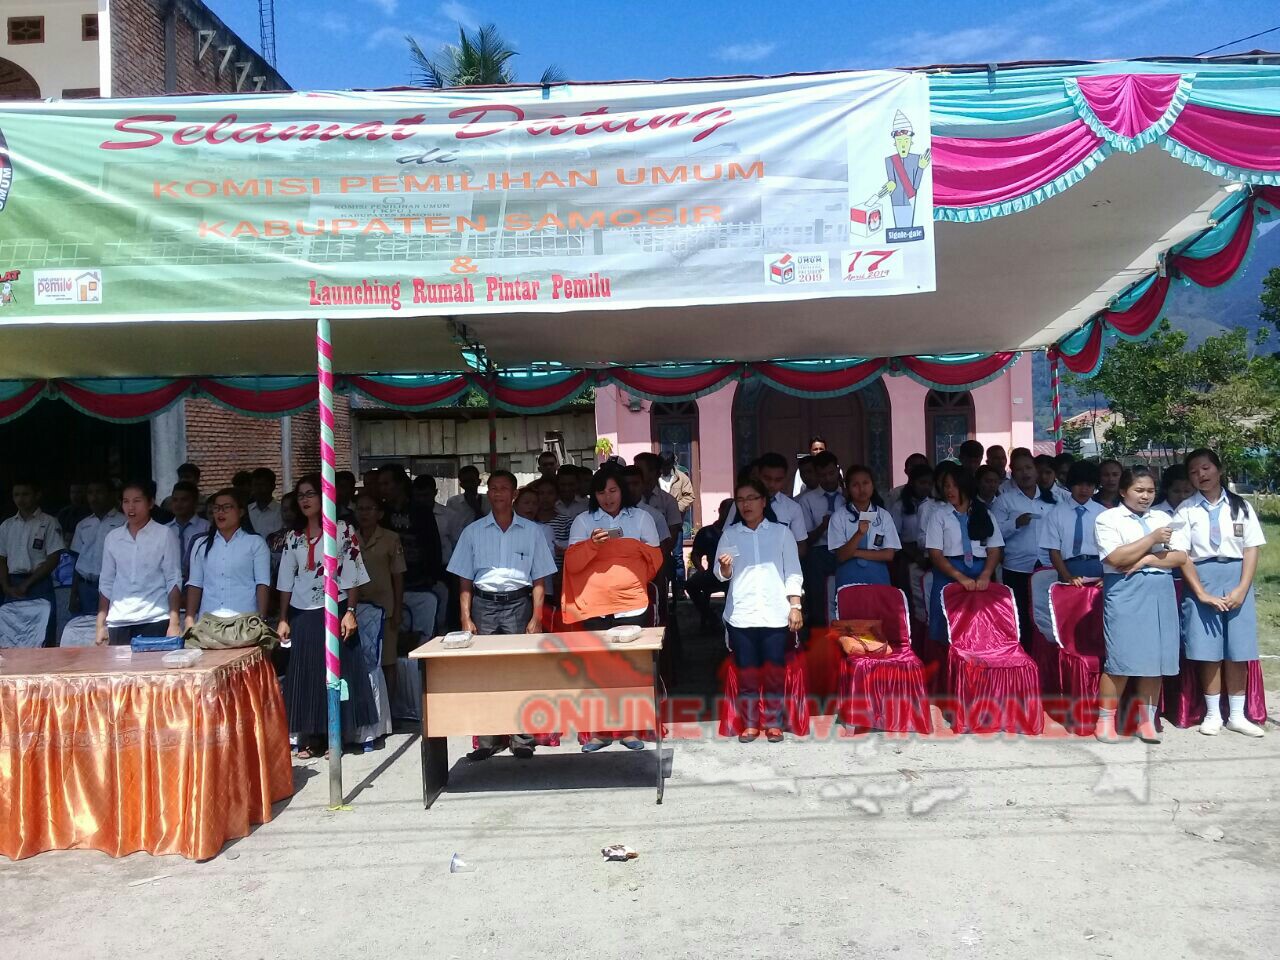 Foto : Para pemilih pemula (Siswa/i SMA dan SMK turut hadir pada acara peresmian rumah pintar pemilu KPU Samosir